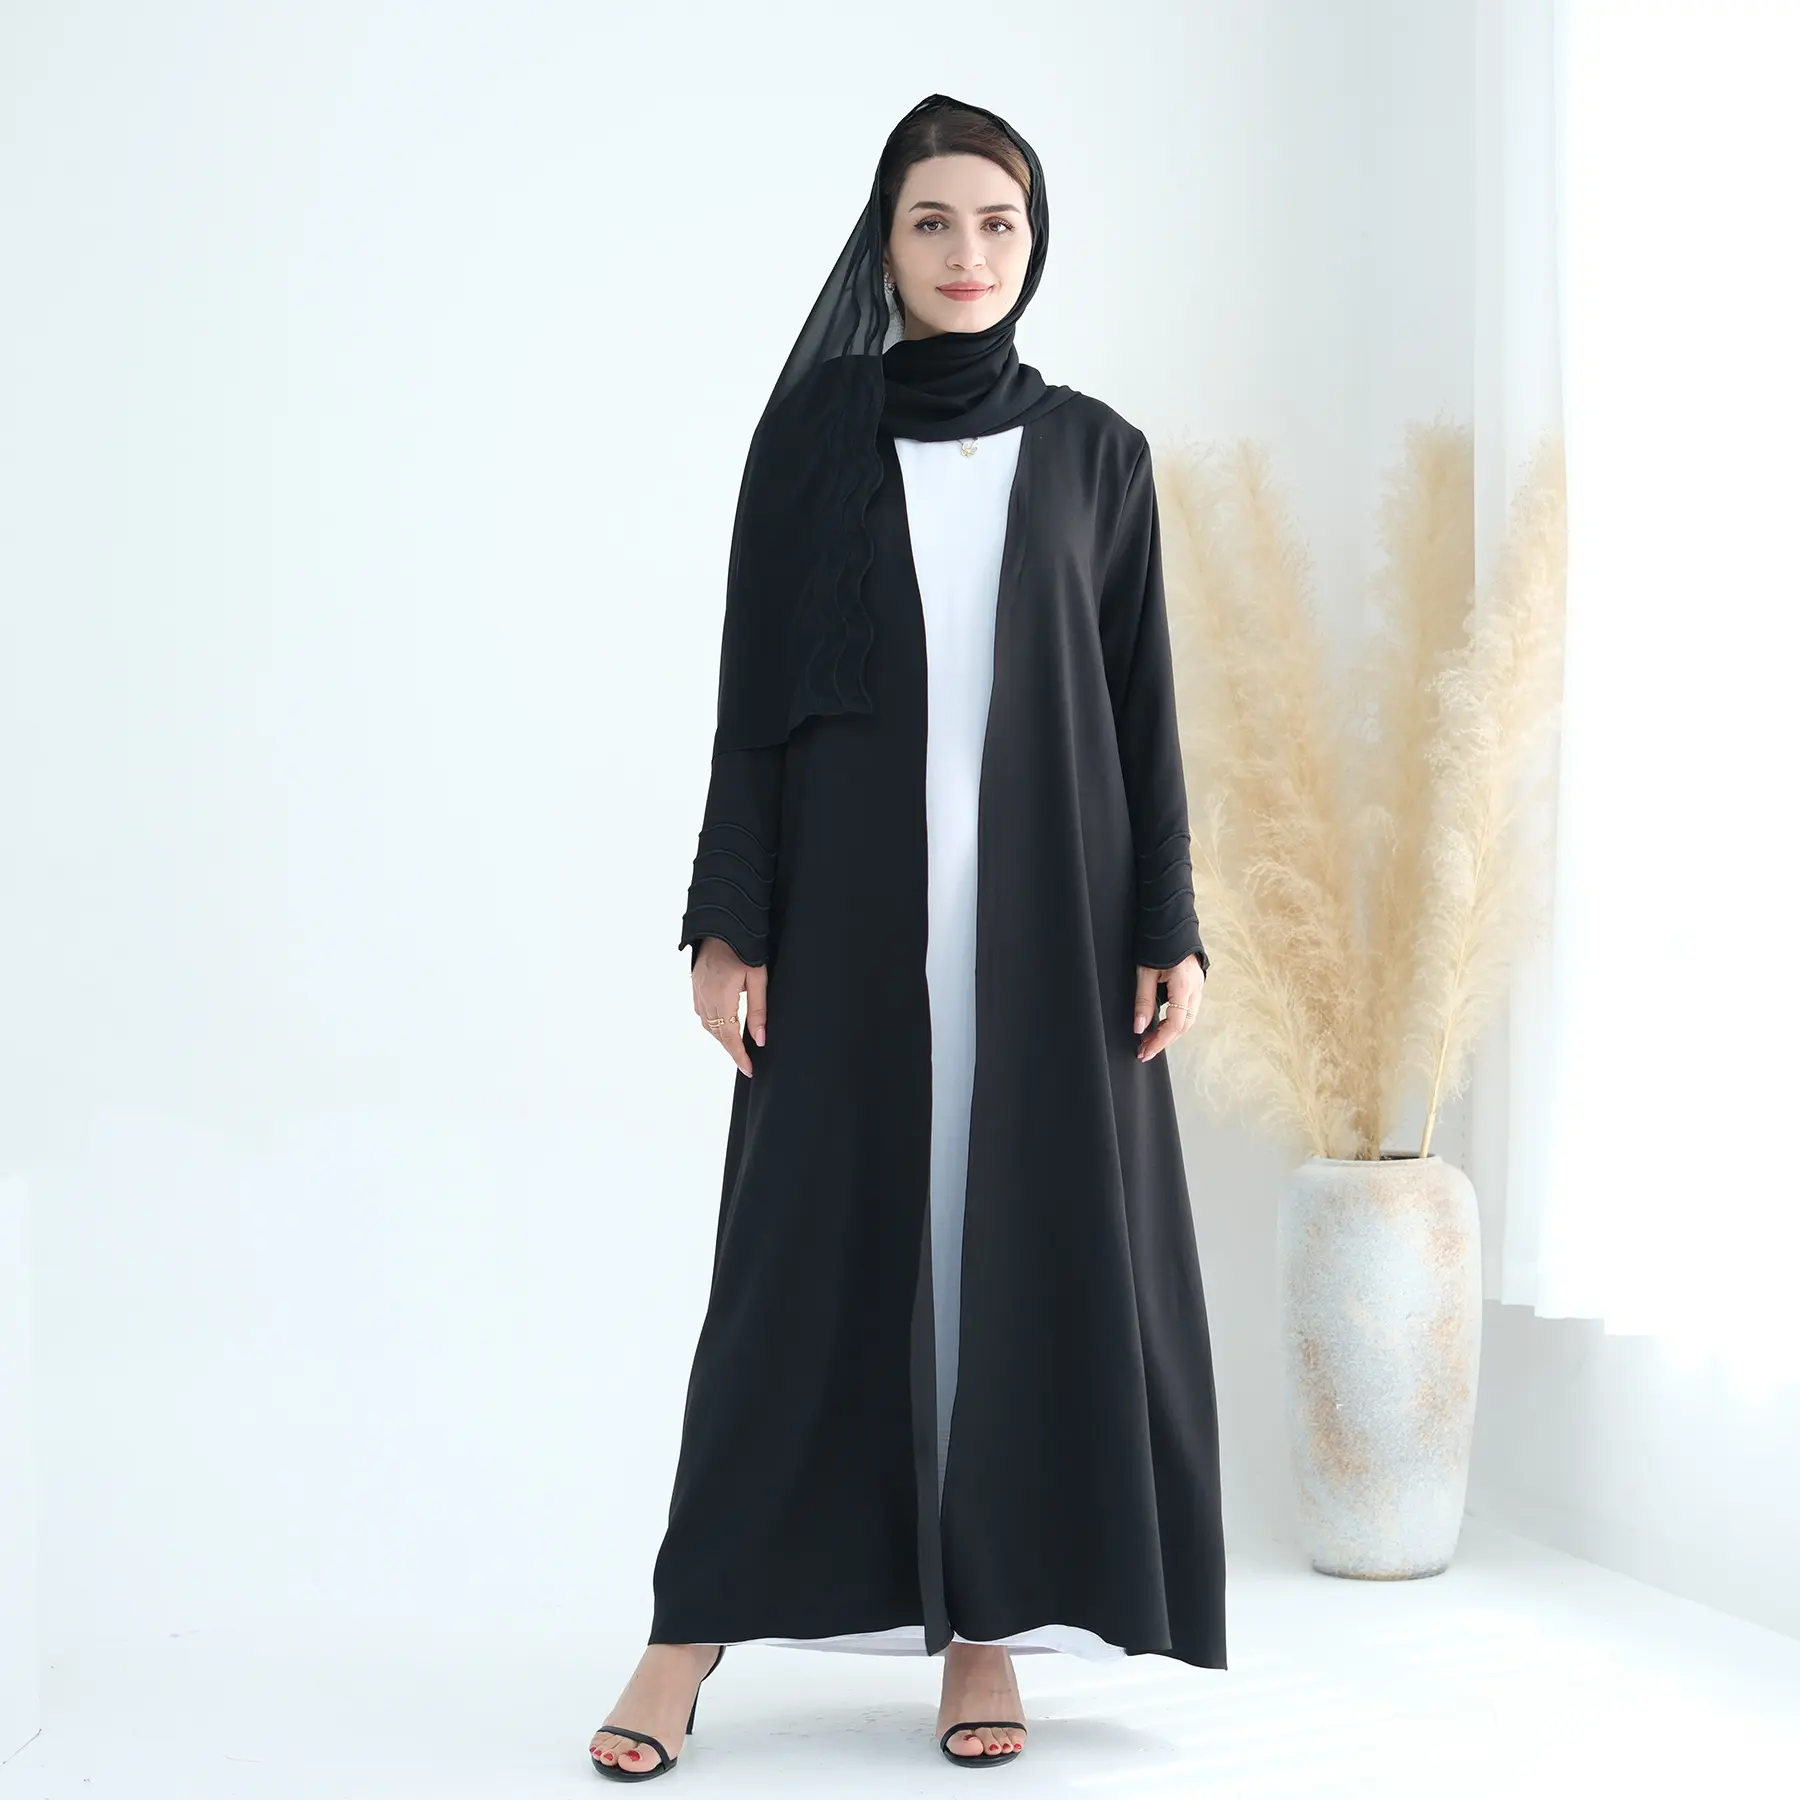 Yeni siyah islam bayanlar bez düğün açık Abayas seti düz renk uzun kollu siyah açık Abaya Dubai nakış tasarımları ile